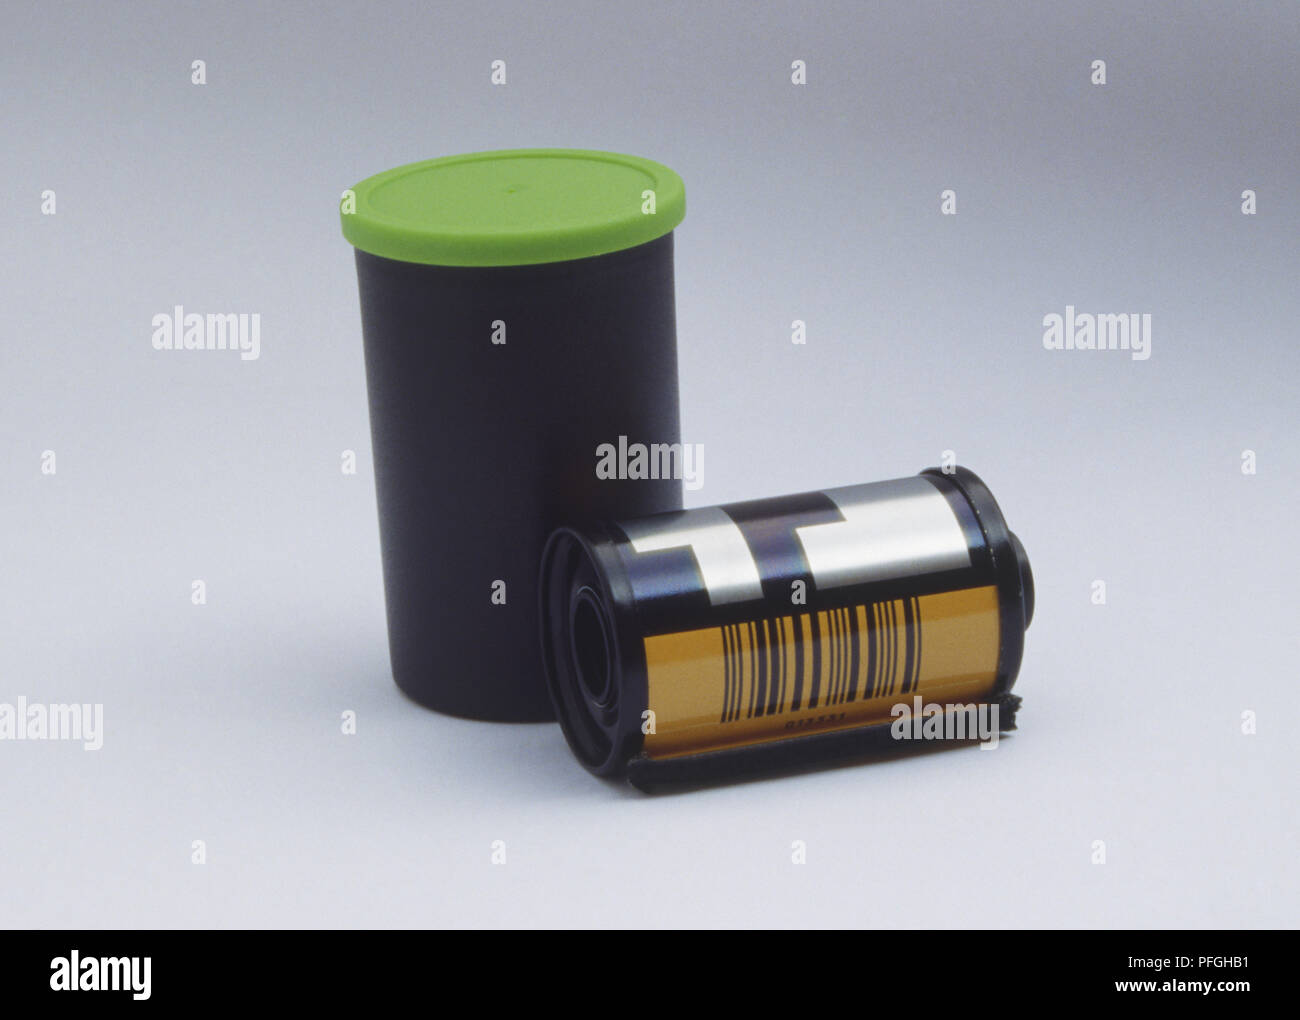 Un chasis de película y un contenedor sellado de luz que tiene una tapa verde. Utiliza una película debe colocarse en un recipiente hermético de luz. Foto de stock